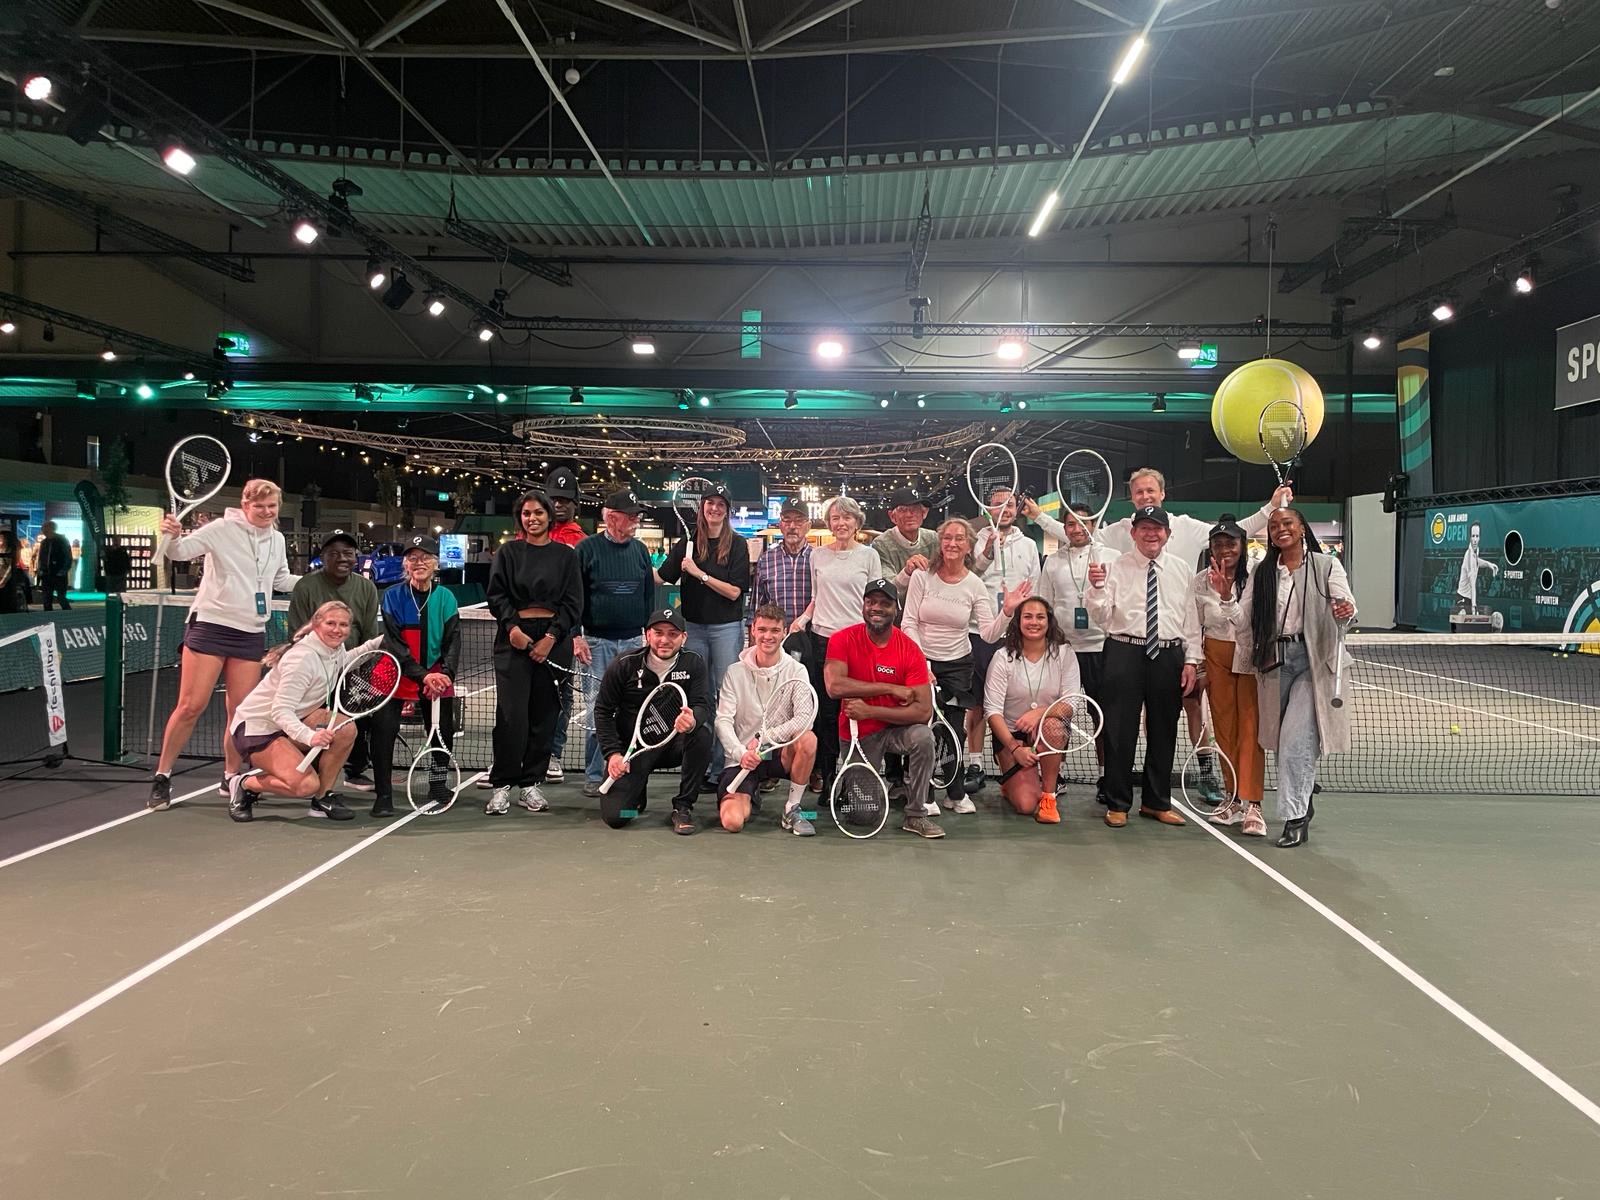 Een dag vol plezier en spanning voor Rotterdamse senioren tijdens het ABN AMRO Tennis Toernooi!